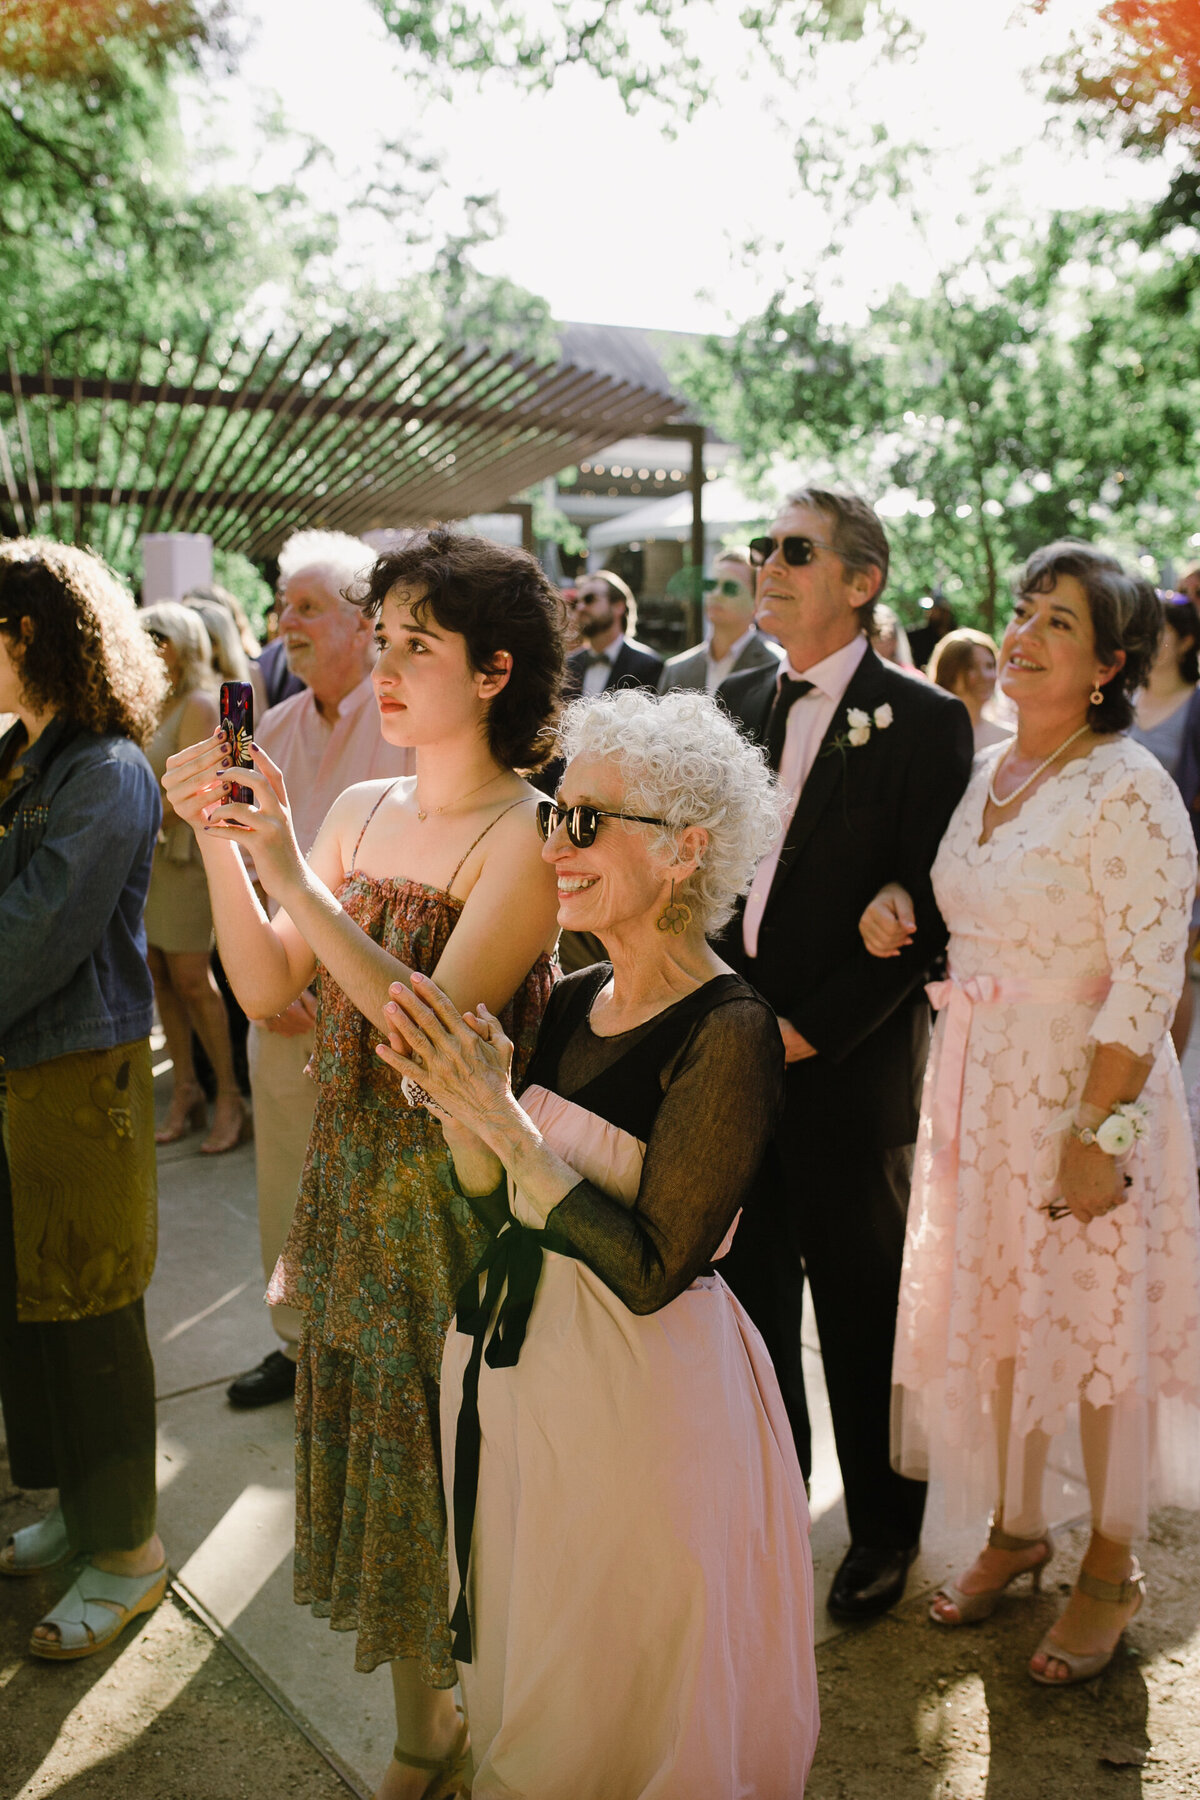 Guests at wedding ceremony at Umlauf Sculpture Garden, Austin